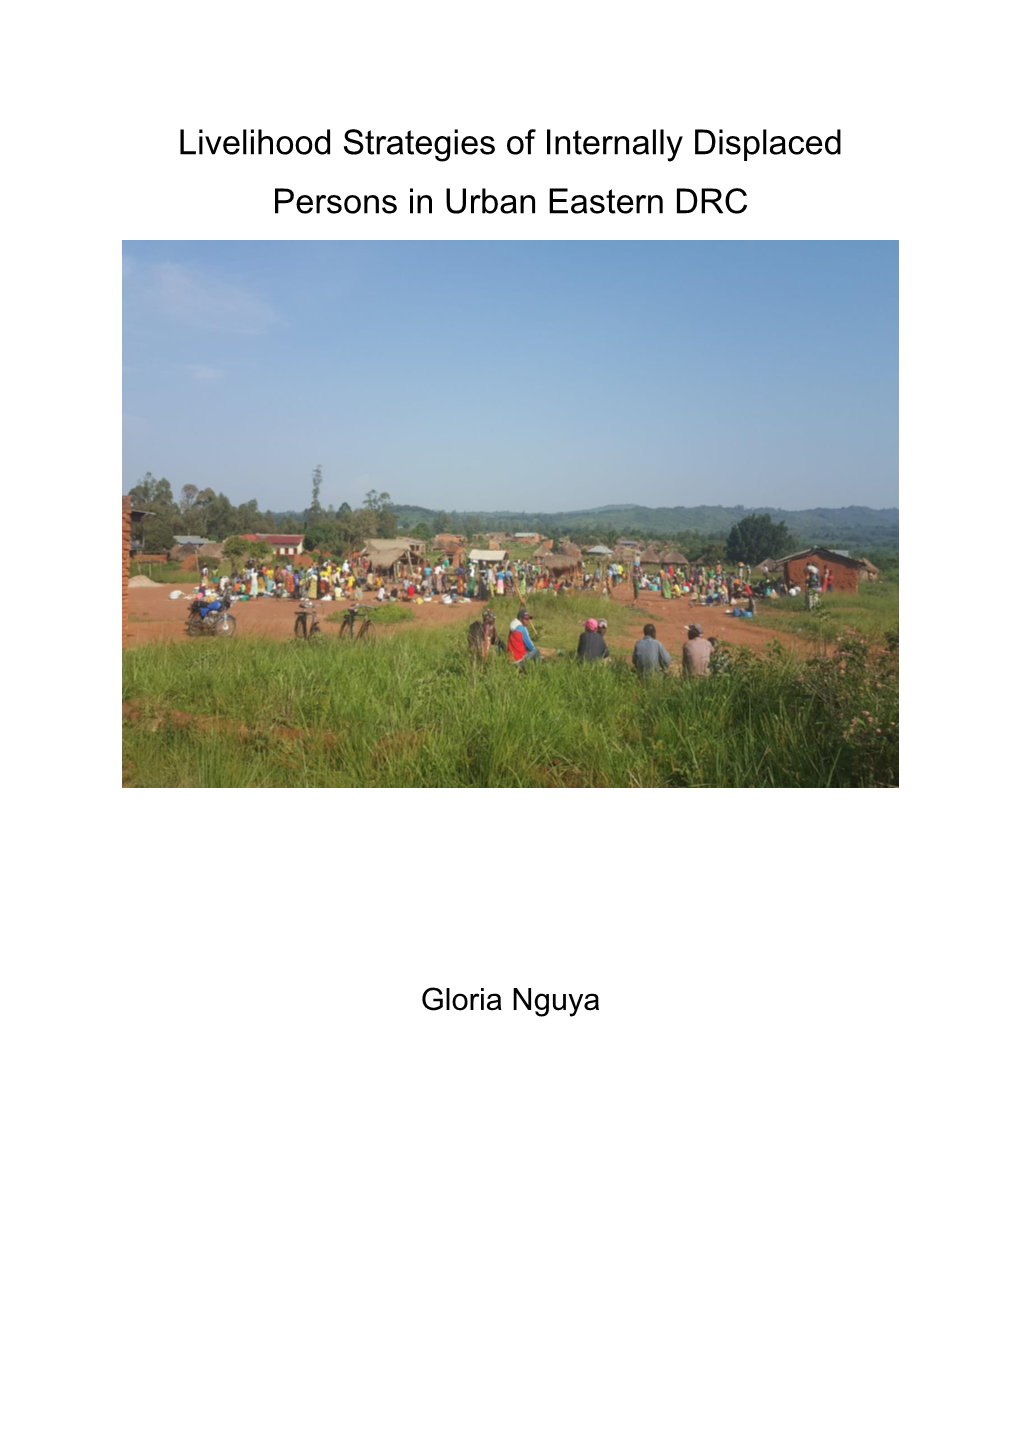 Livelihood Strategies of Internally Displaced Persons in Urban Eastern DRC